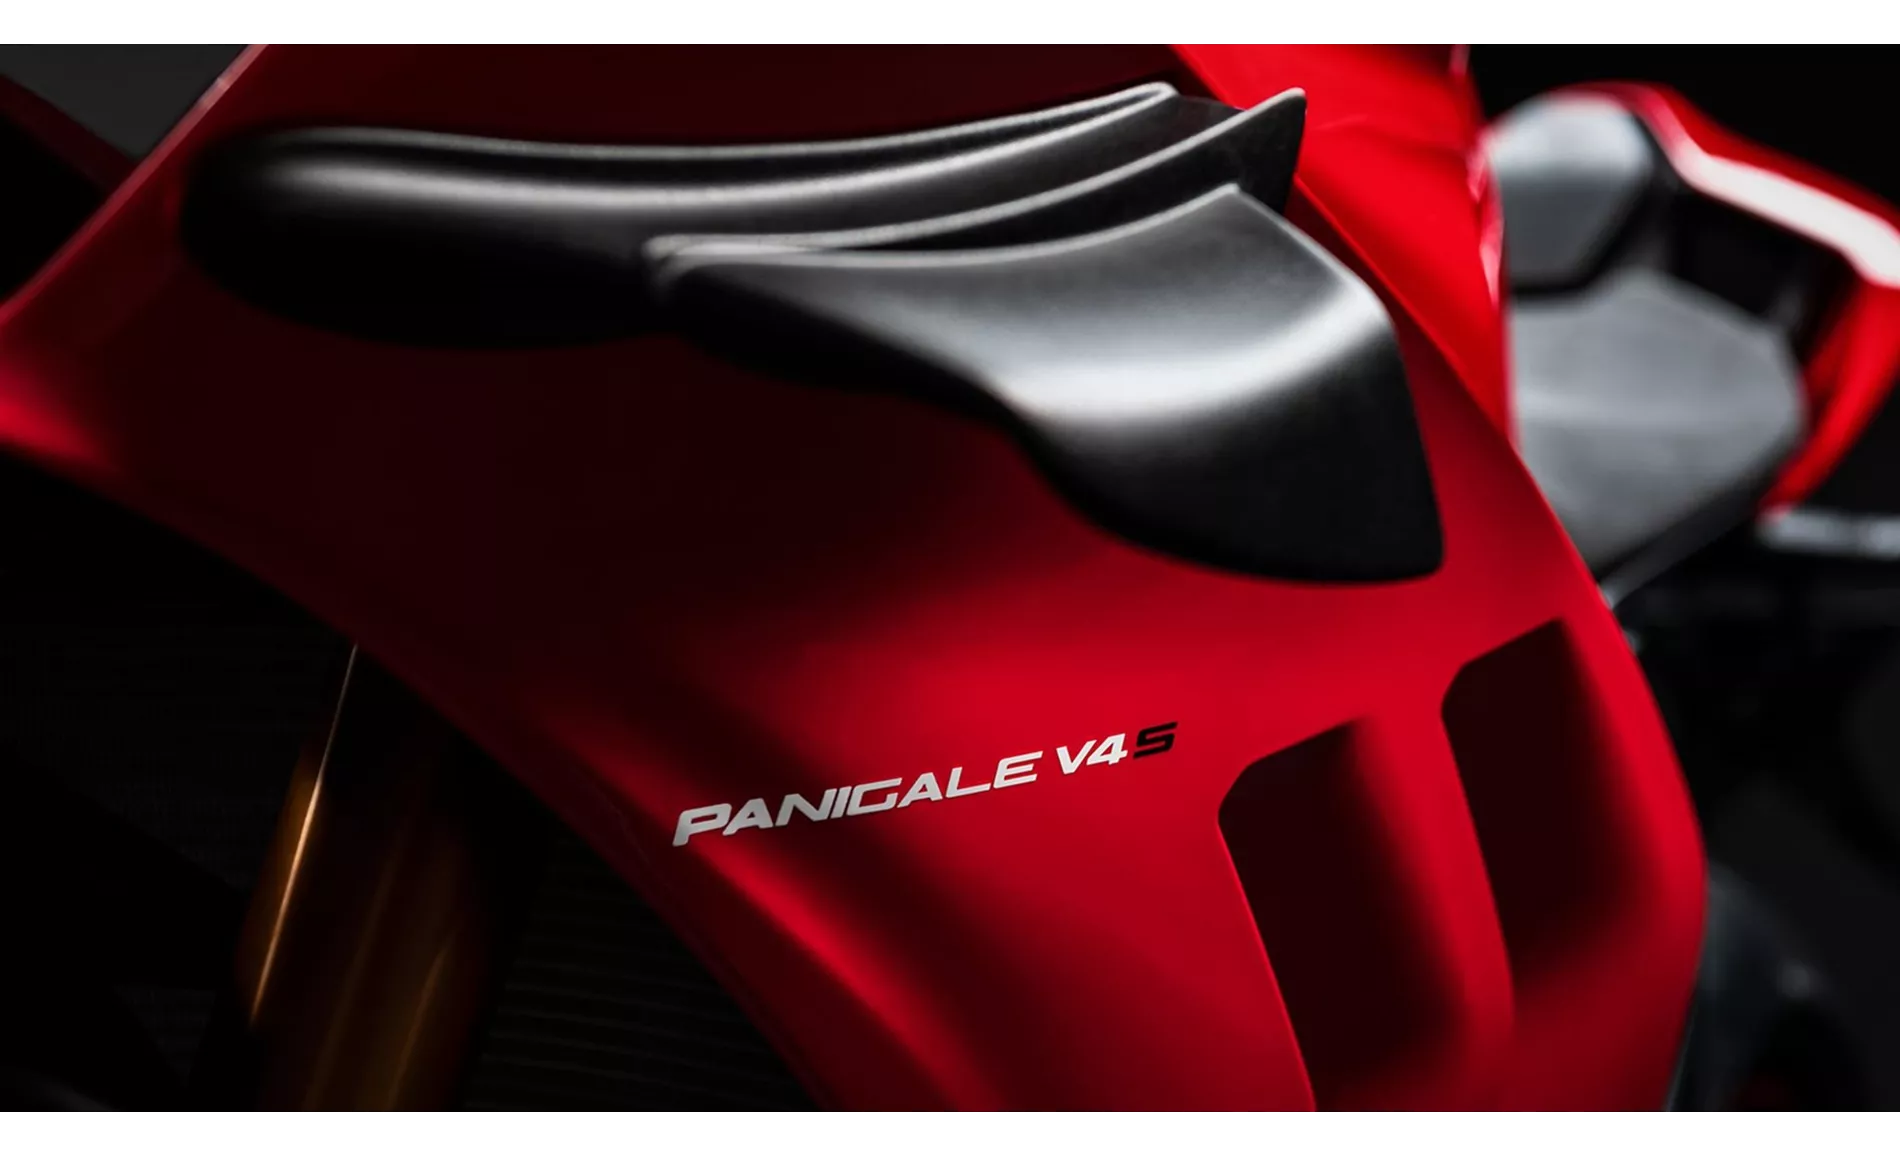 Ducati Panigale V4 S 2021